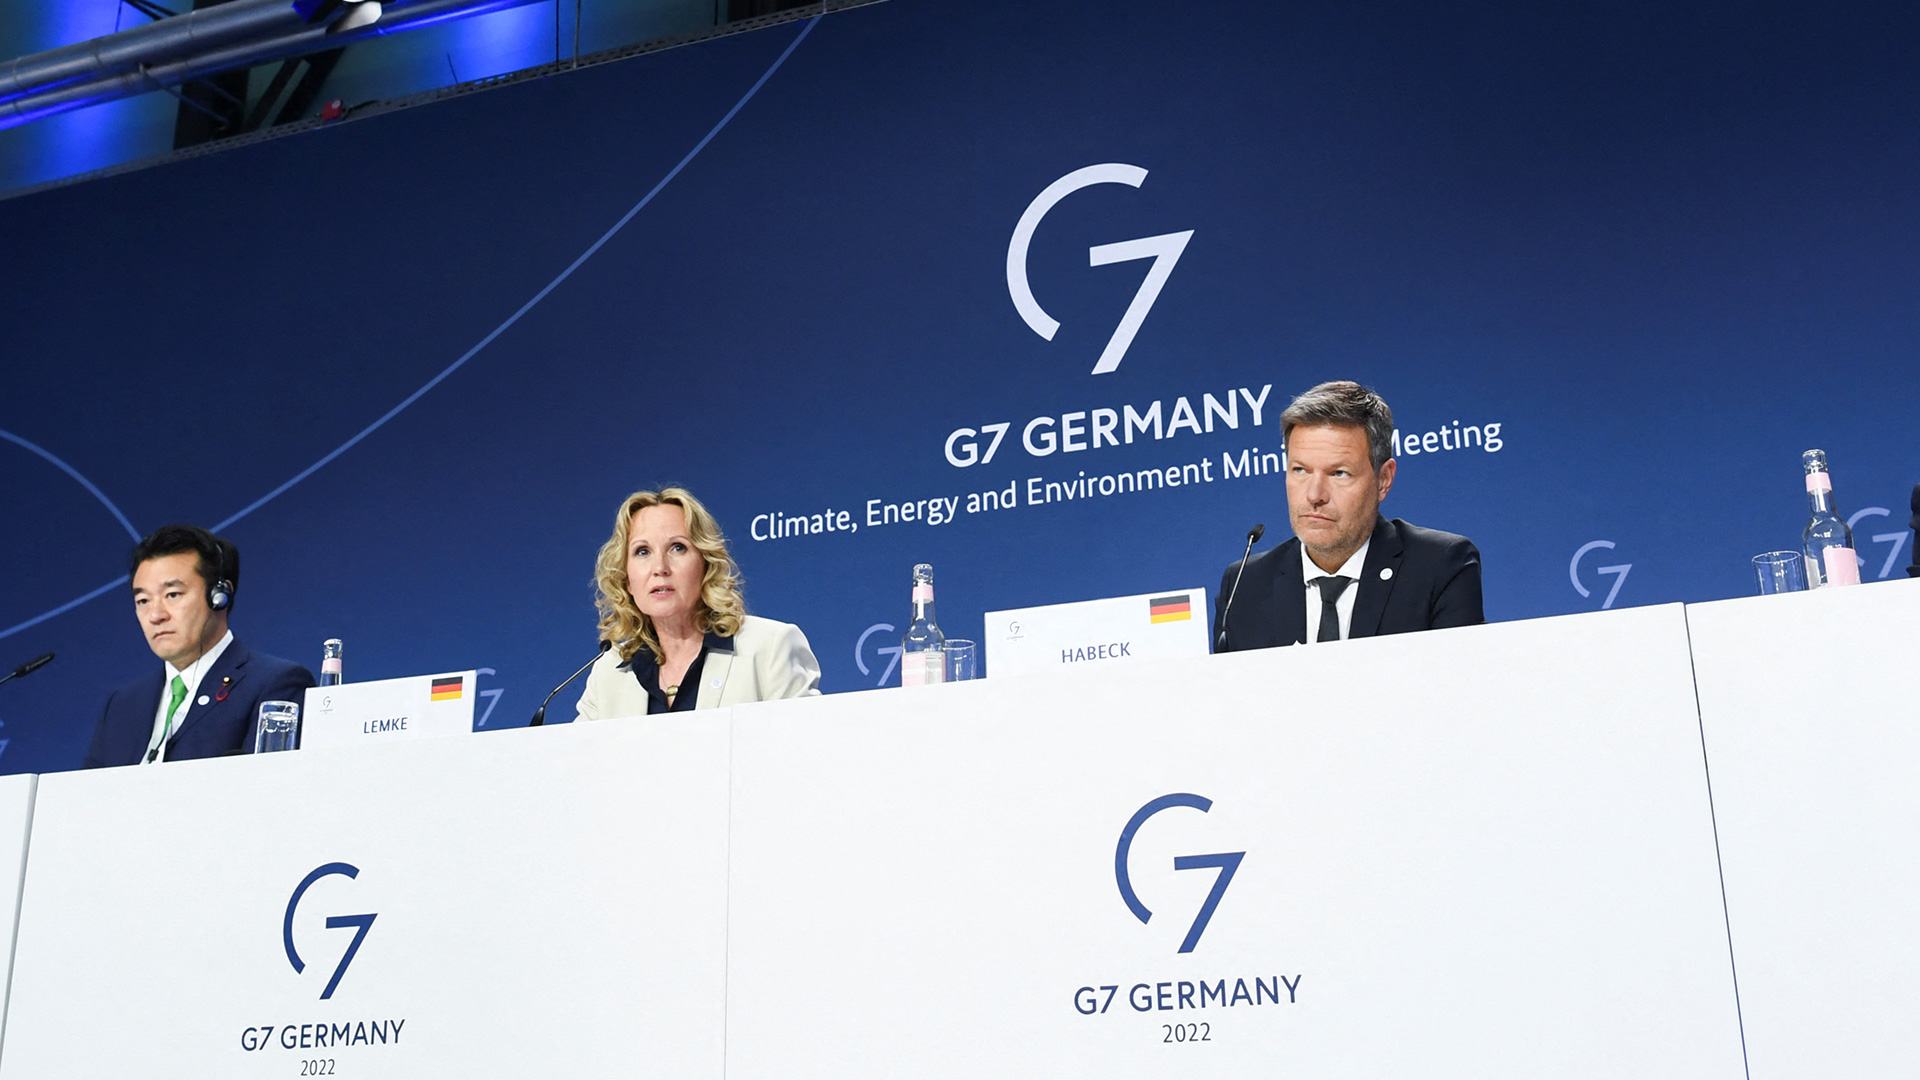 Gipfelabschluss: G7 bekennen sich zum Kohleausstieg